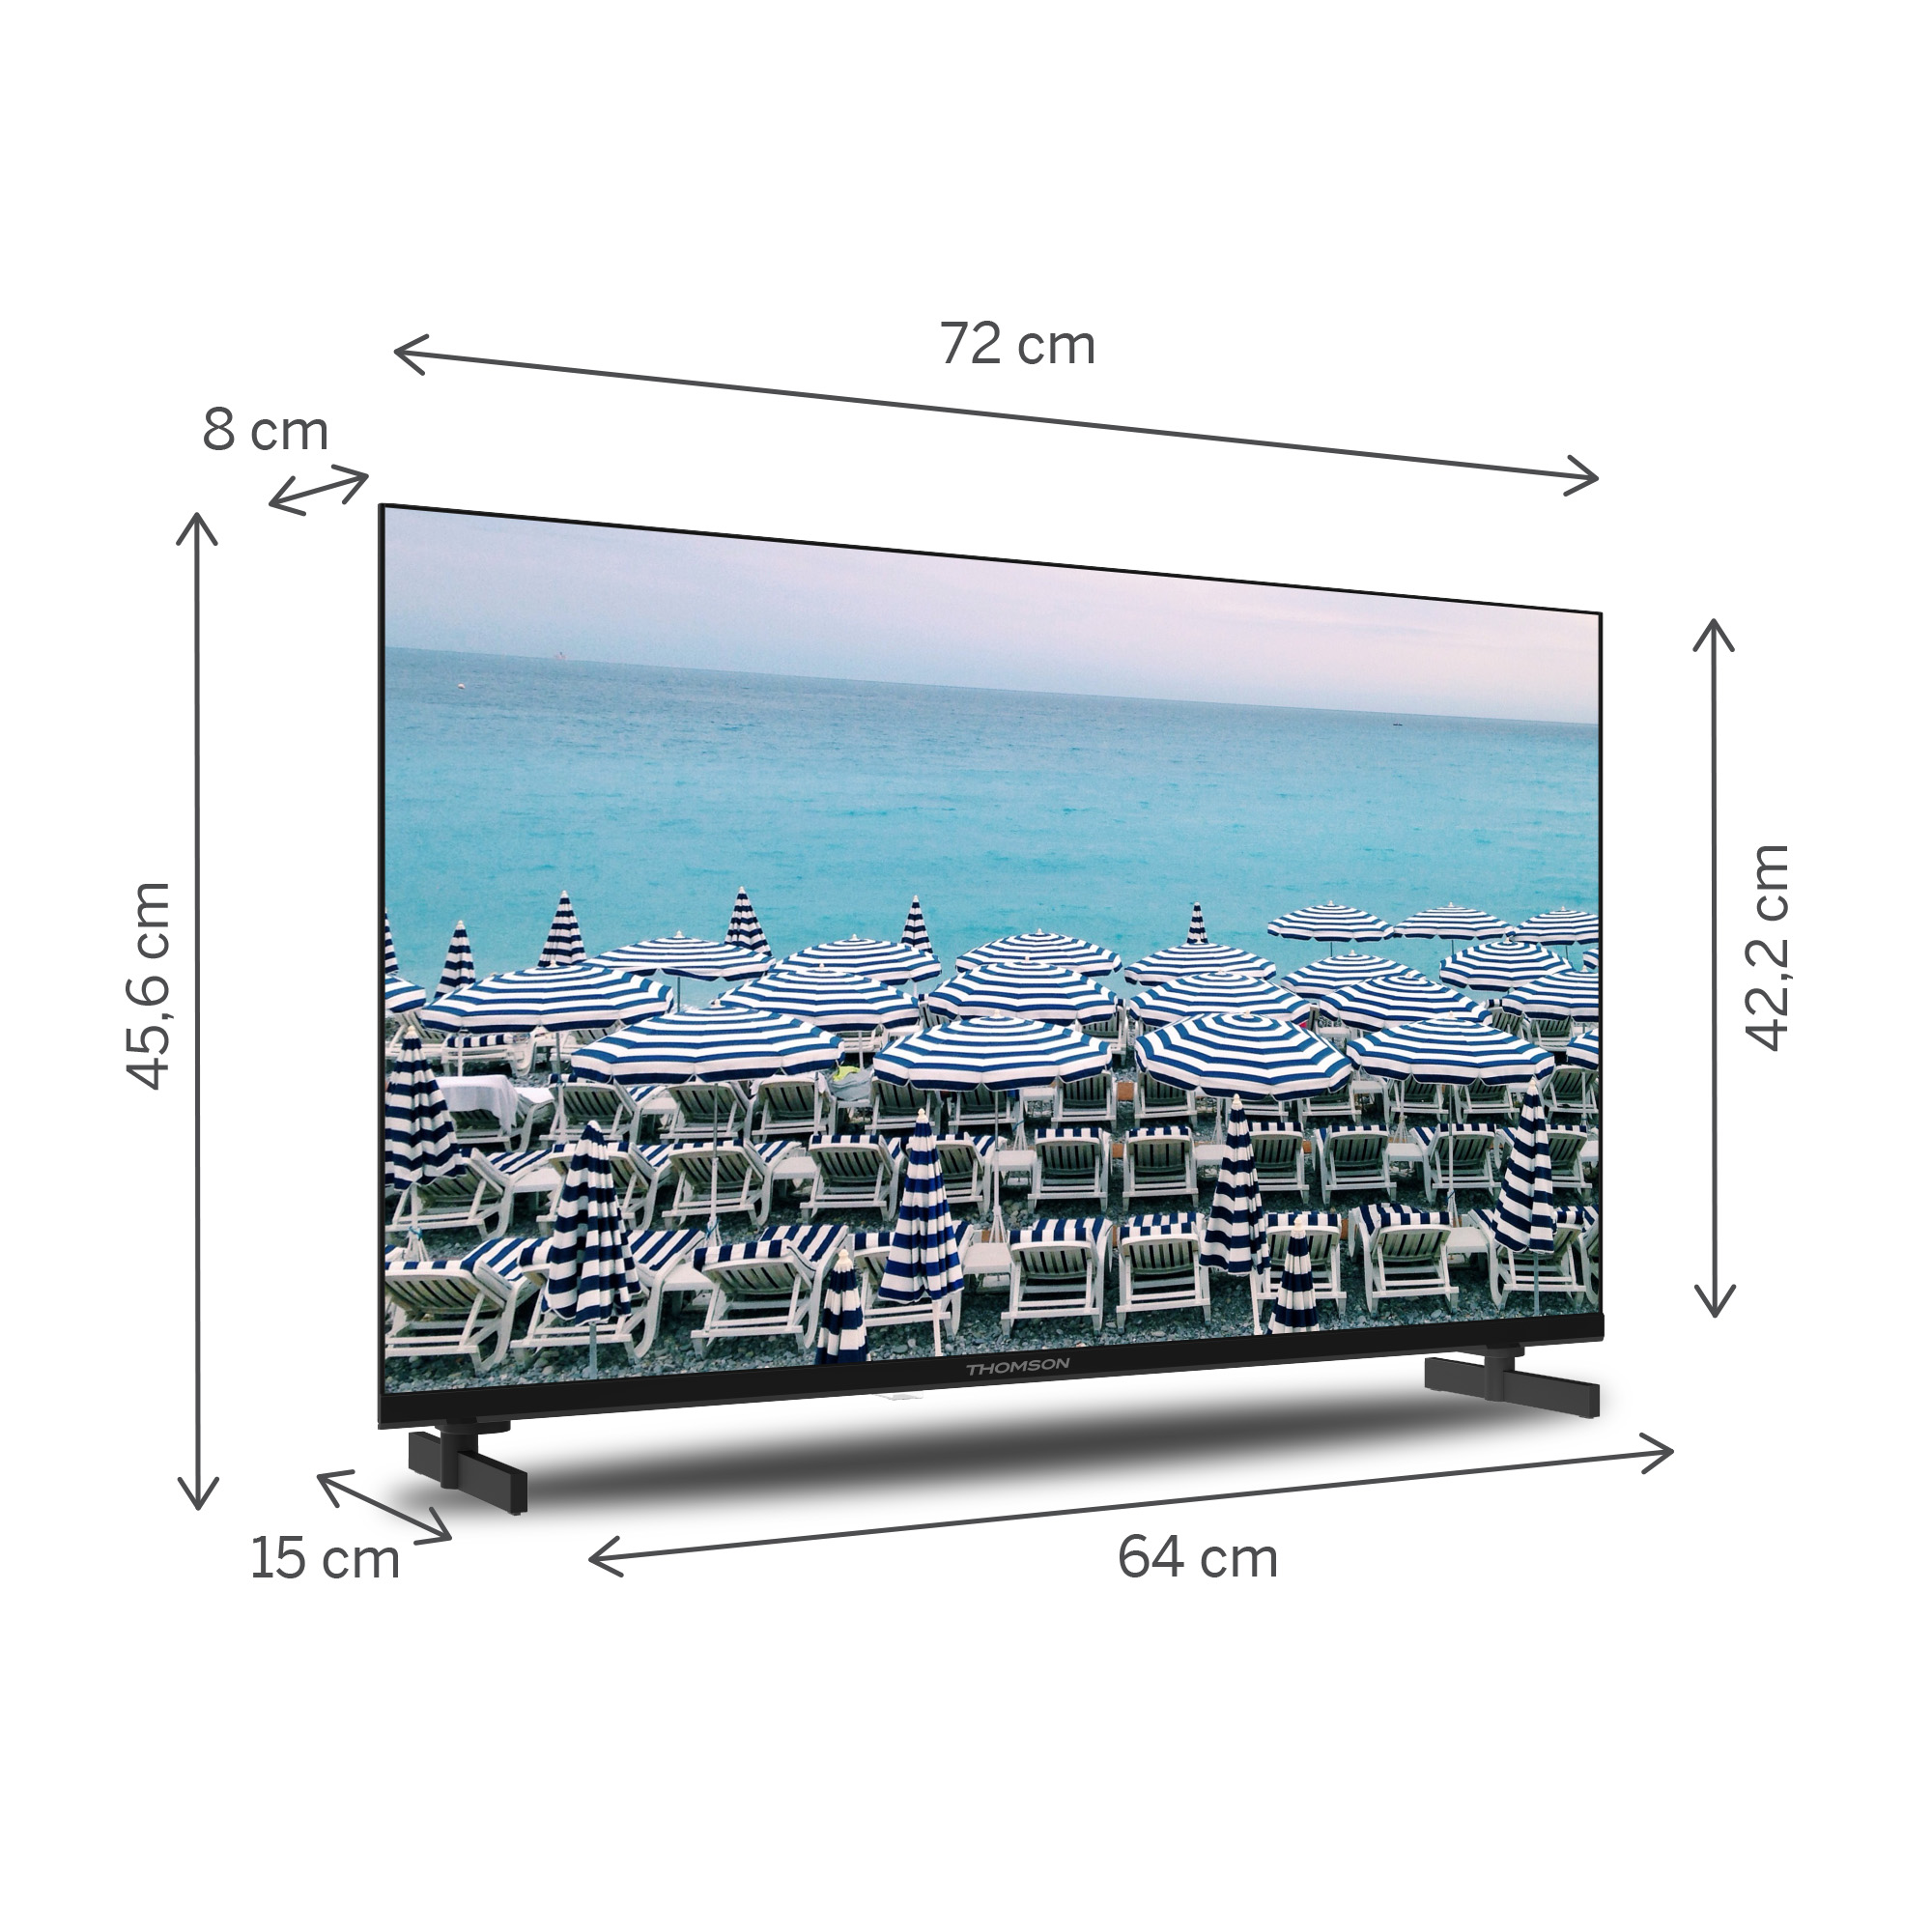 cm, LED 32 THOMSON 32HD2S13 TV / (Flat, HD) 81 Zoll